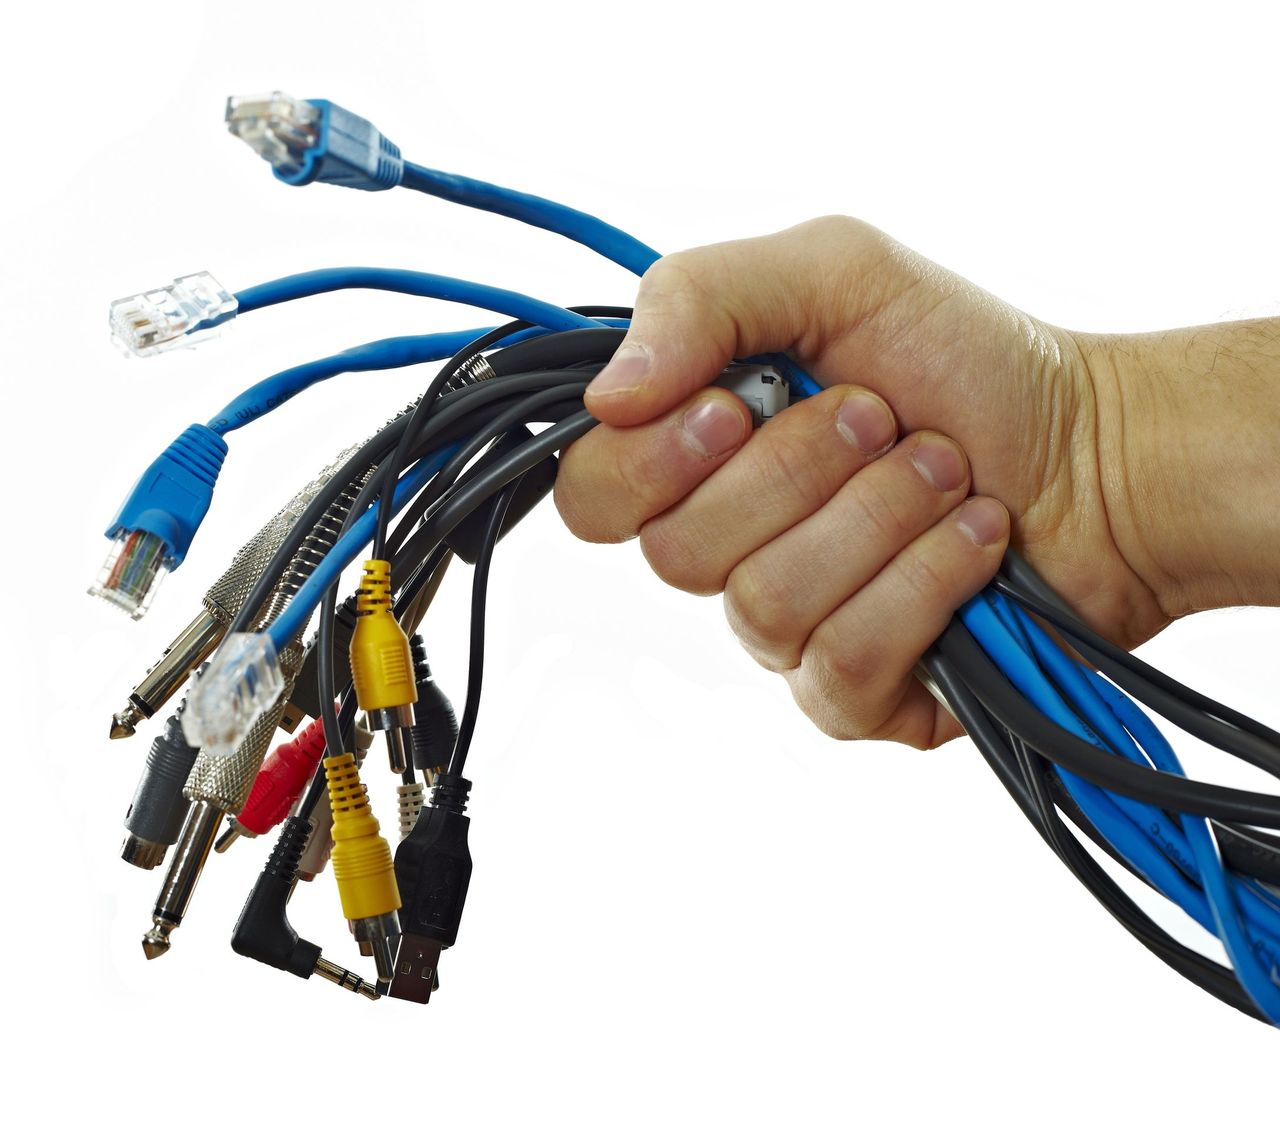 Na IFA 2015 zabrałem 1 kabel do ładowania różnych urządzeń. Na IFA 2016 muszę zabrać 3